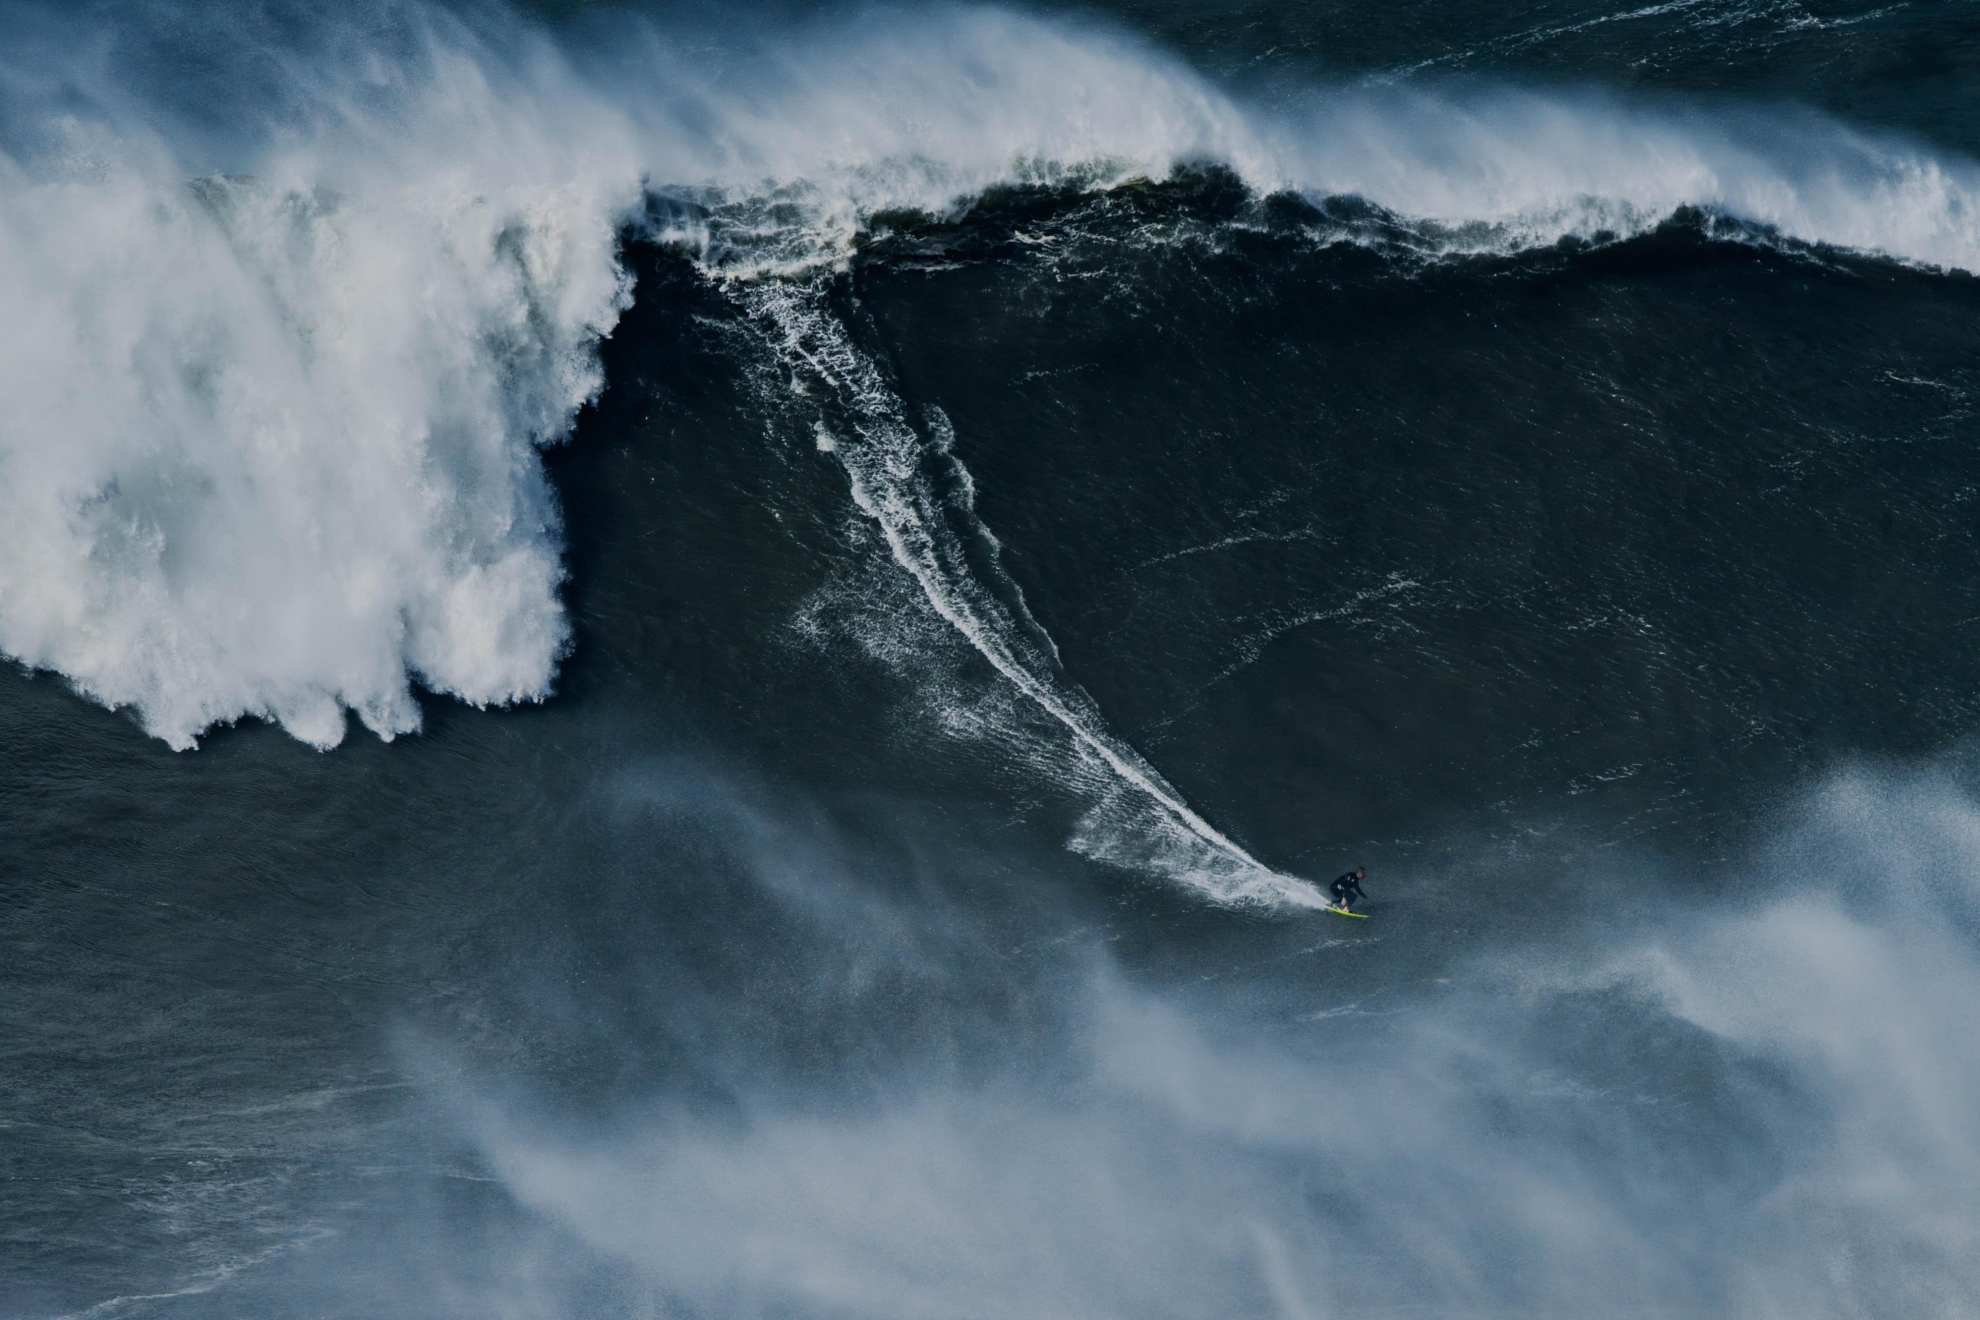 El surfista Sebastian Steudtner logró surfear la ola más grande de Nazaré. Ahora solo falta esperar y que se le reconozca oficialmente el récord.